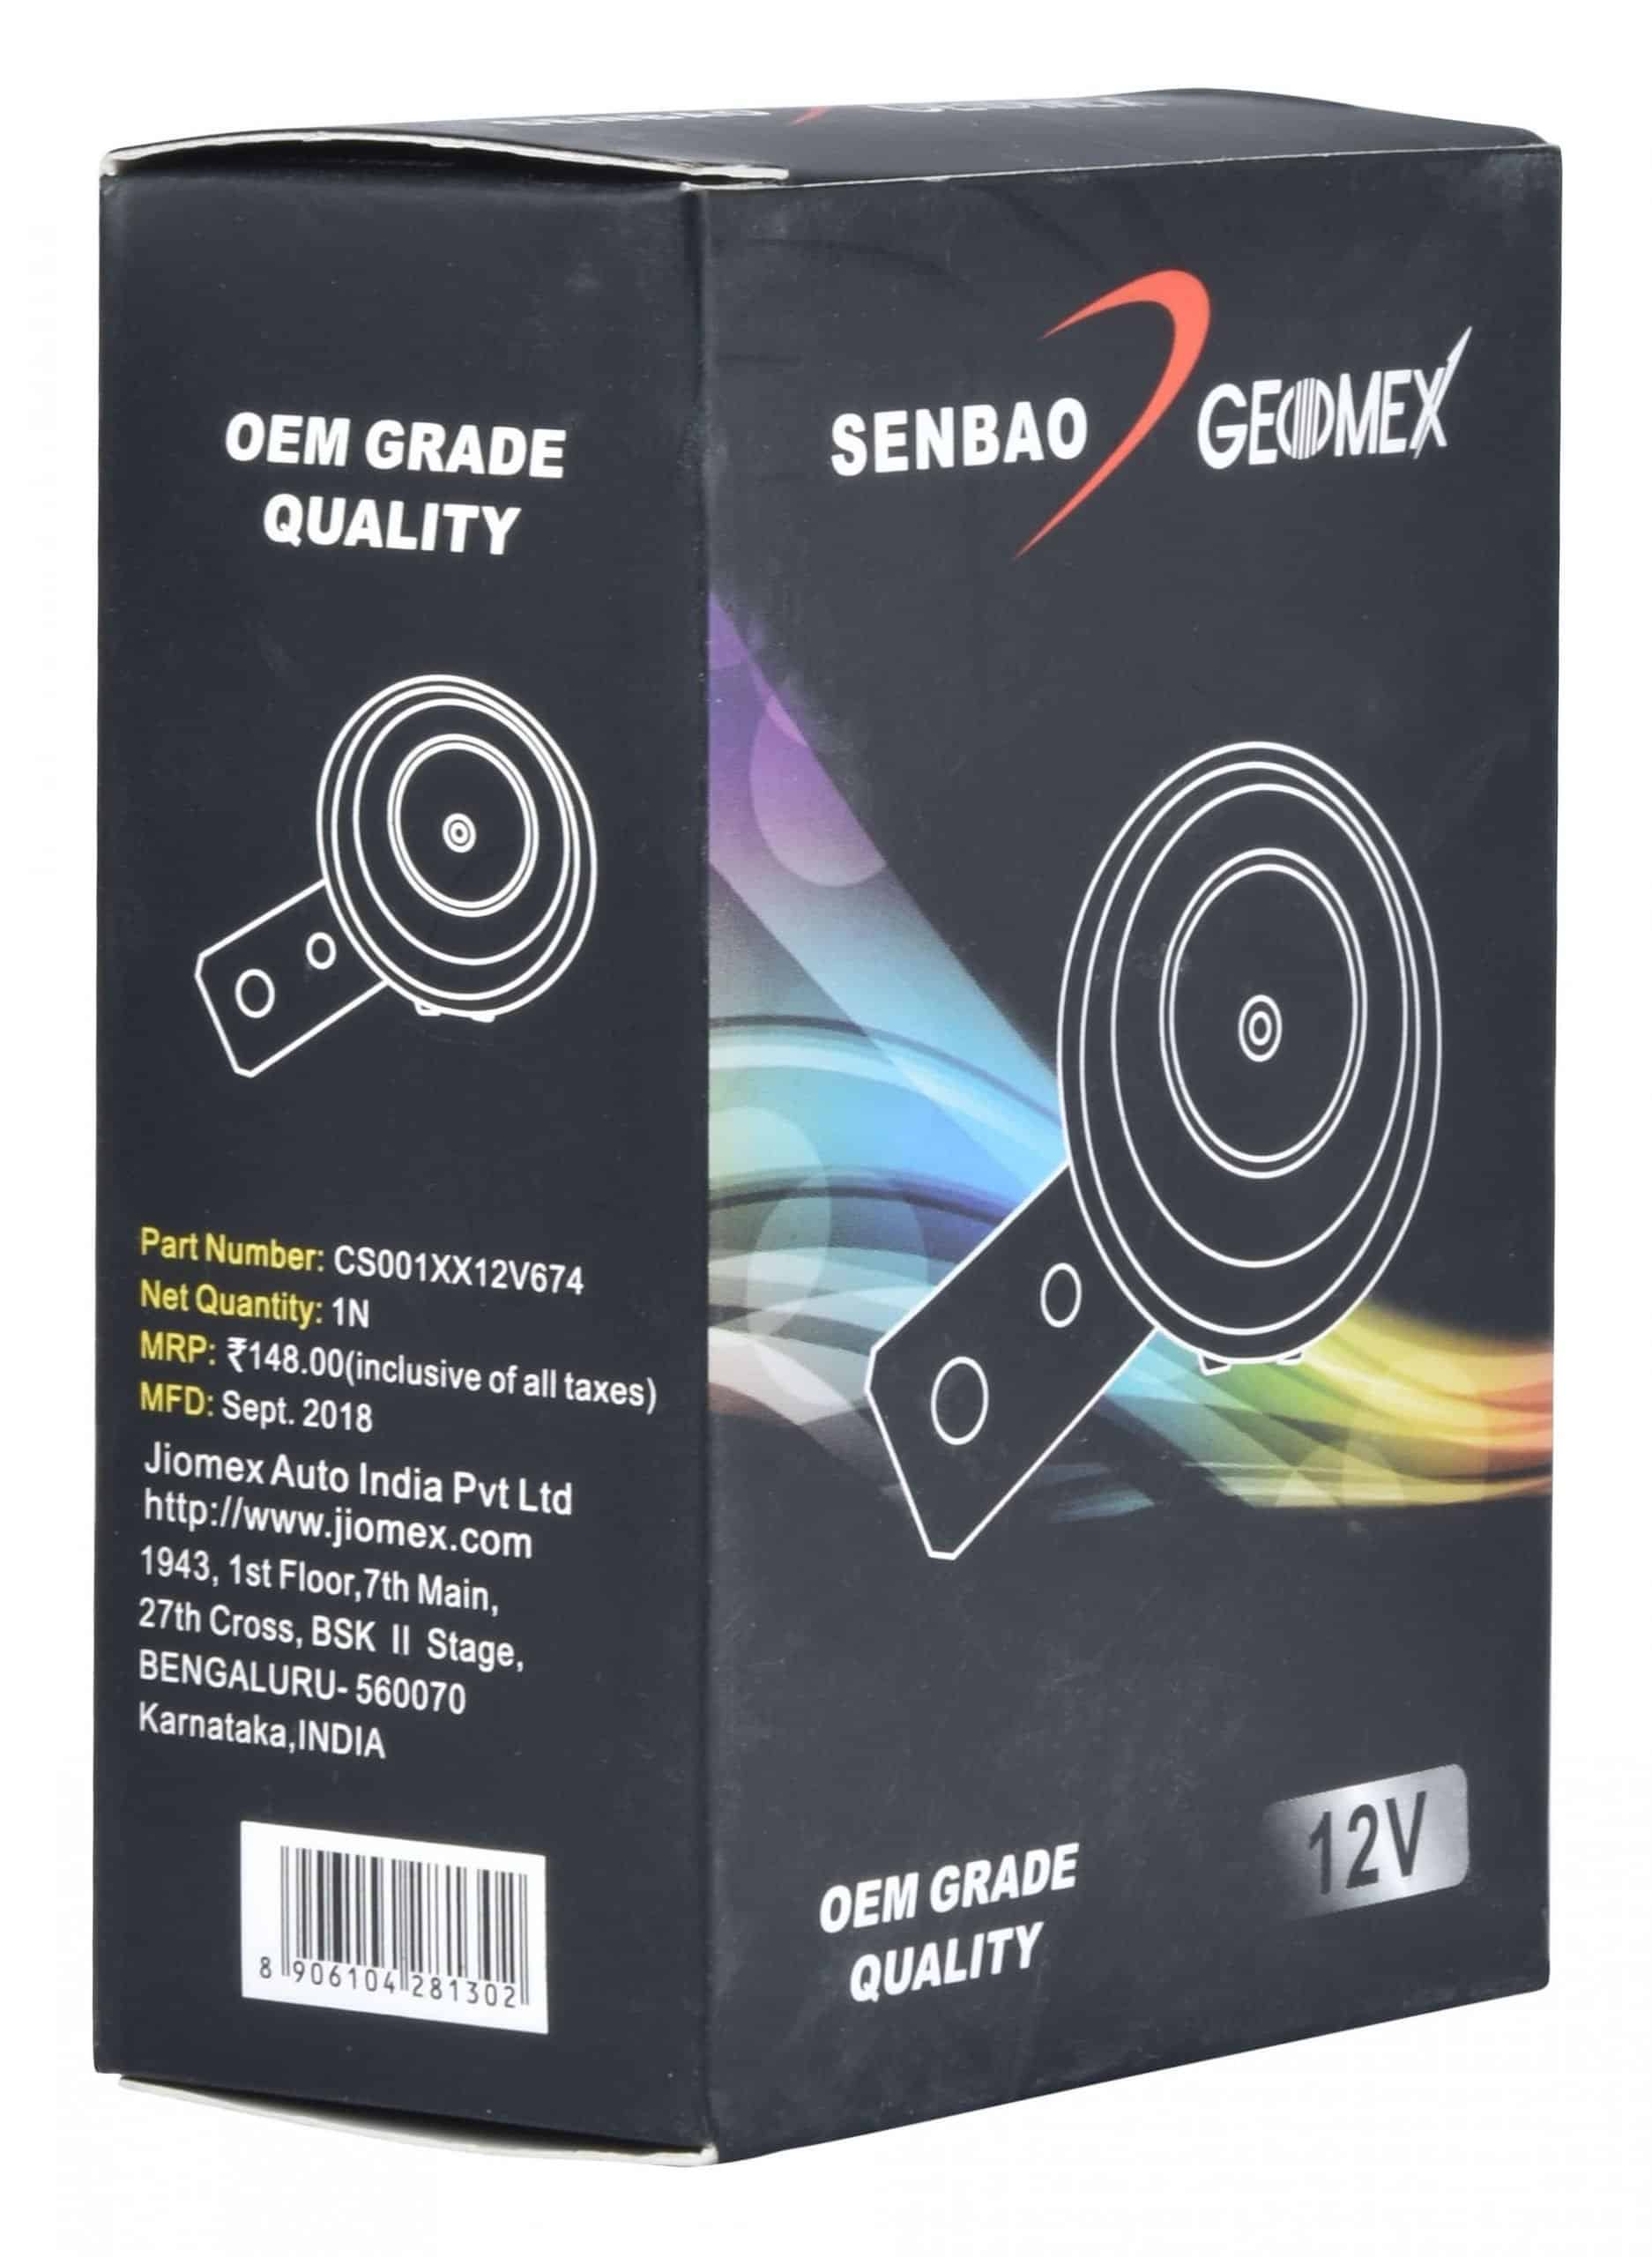 Senbao Geomex Single Horn Small Size 12V